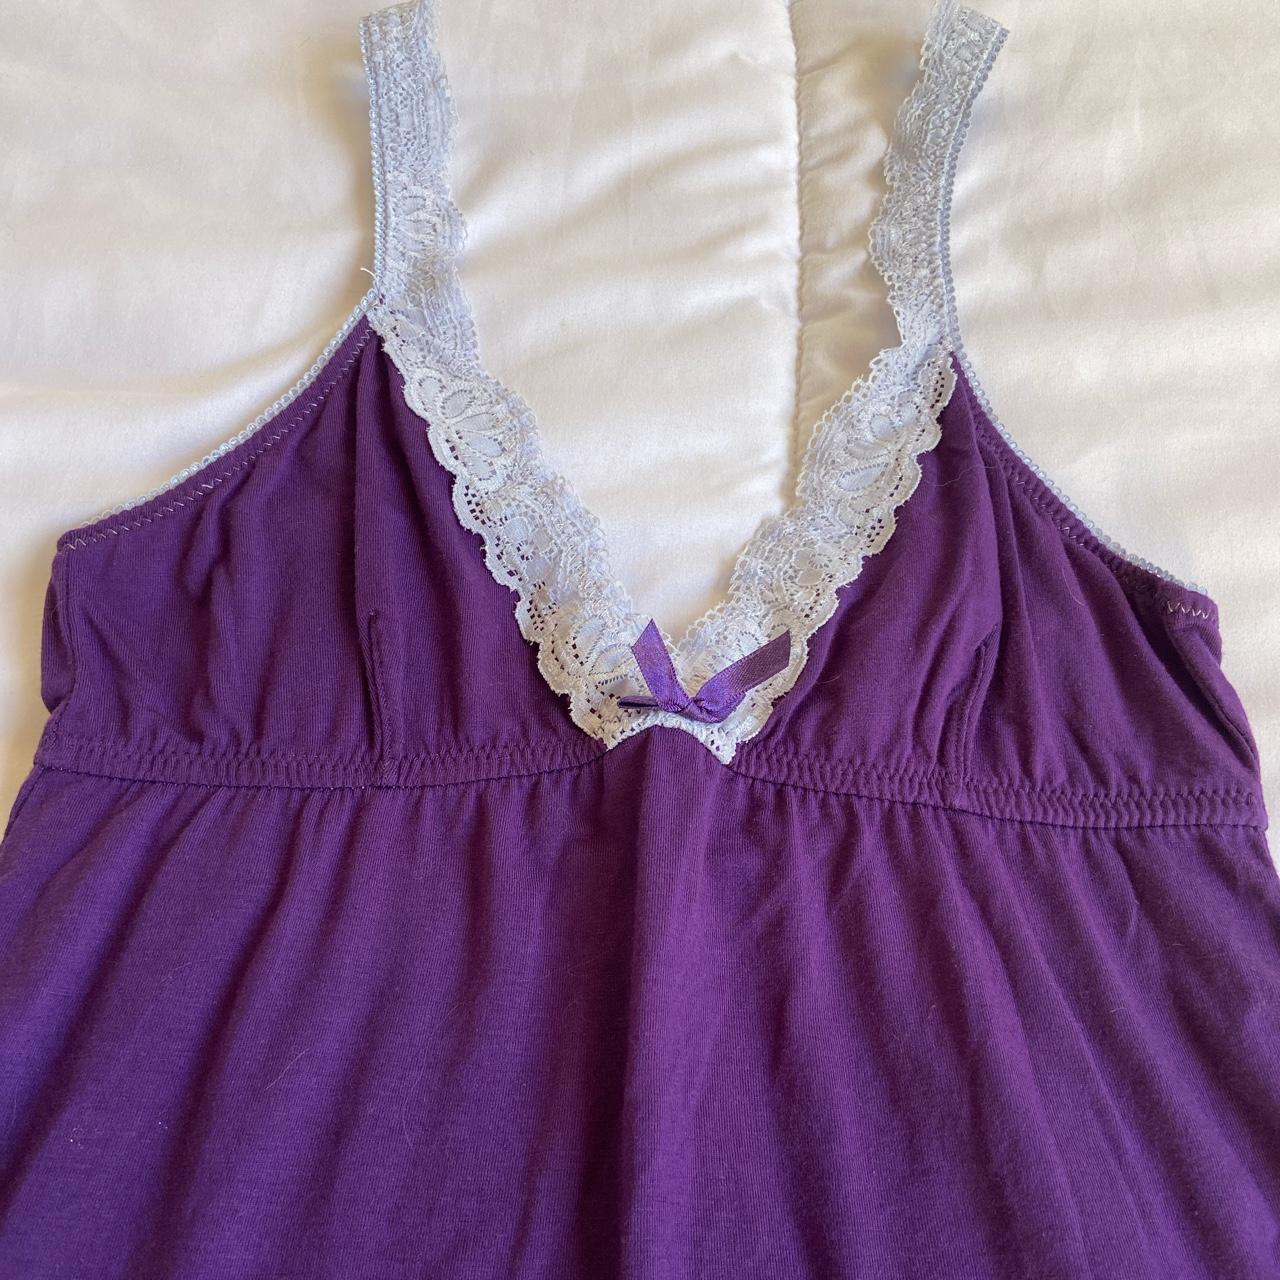 Honeydew Women's Purple and Blue Dress | Depop